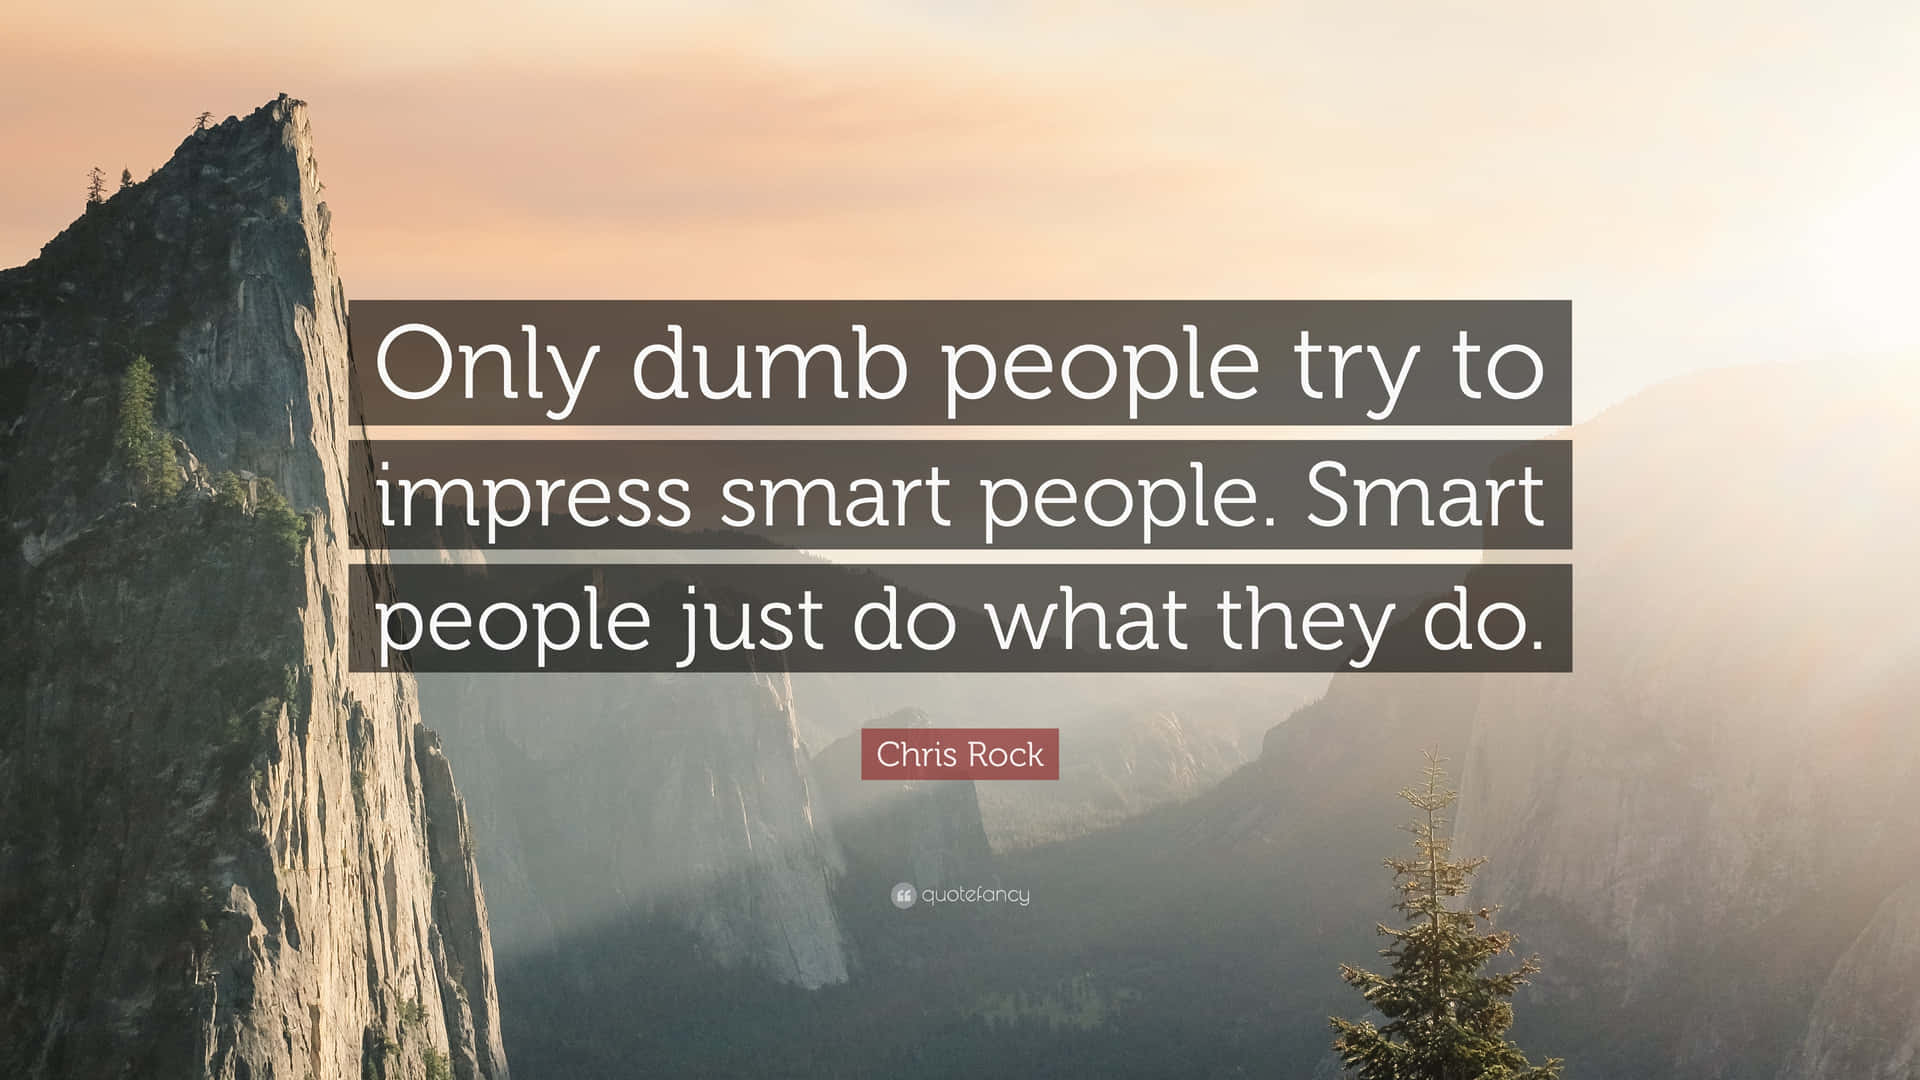 Baradumma Människor Försöker Imponera På Smarta Människor, Smarta Människor Bara Gör Det De Gör.